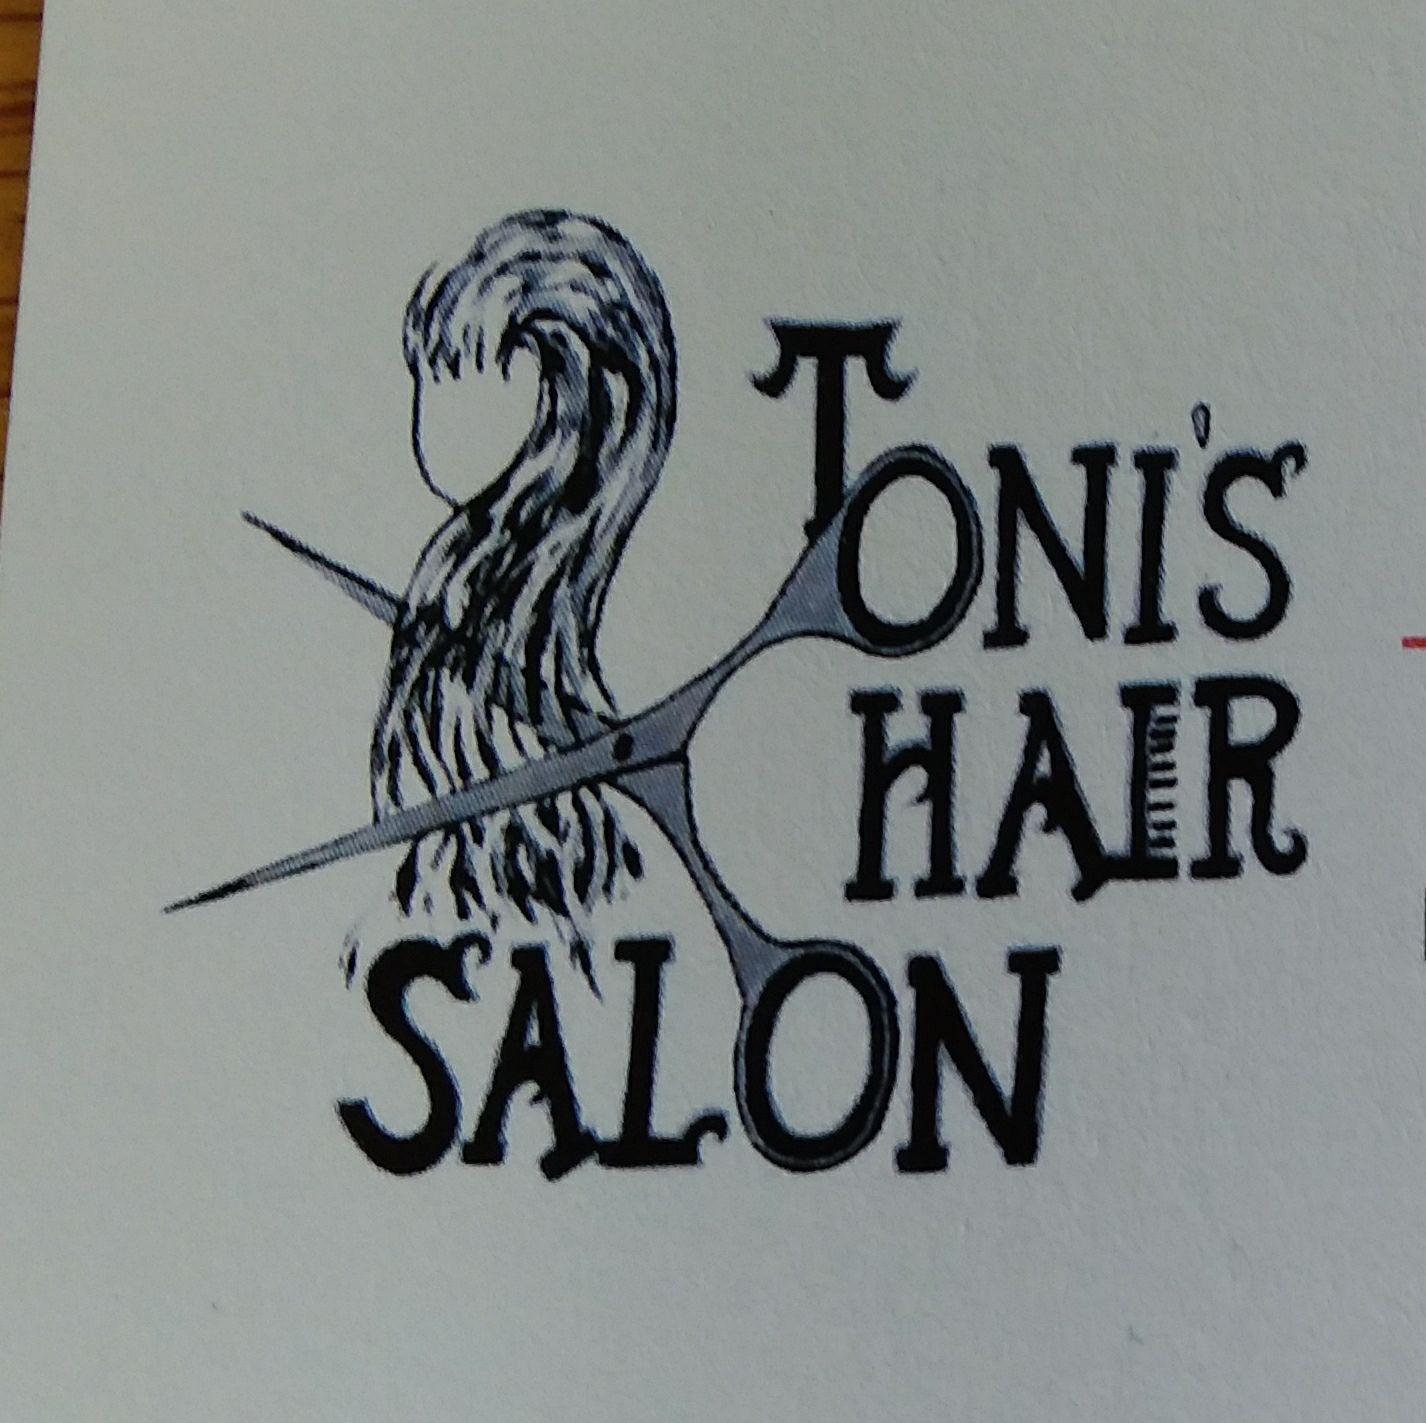 Toni's Hair Salon